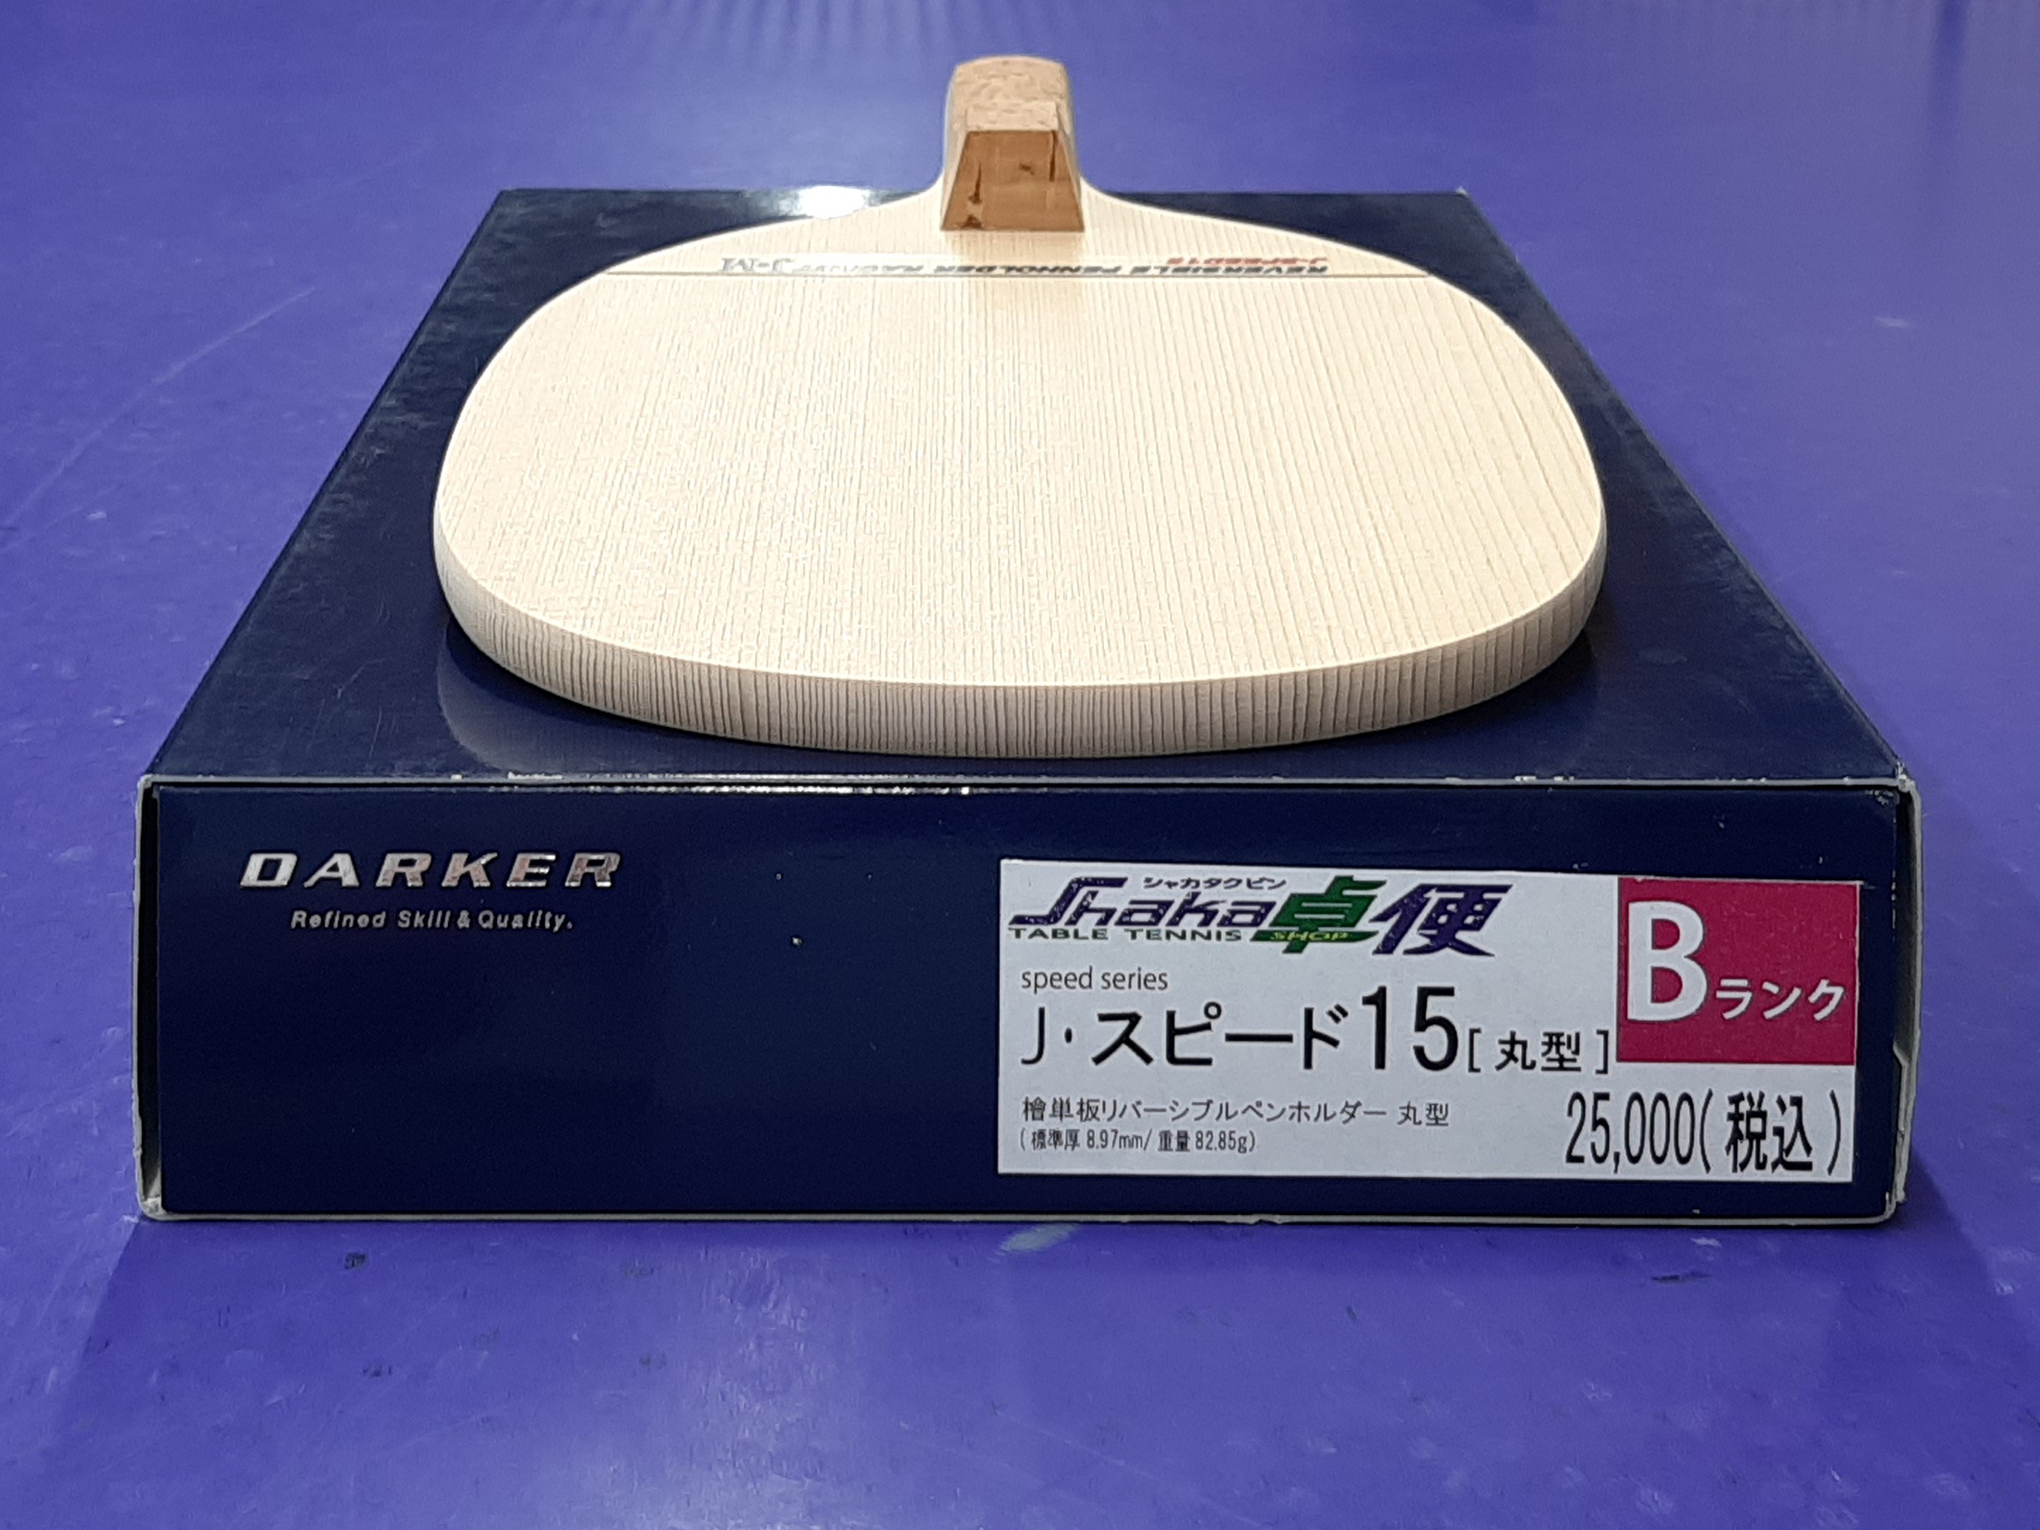 J・スピード 15 (9mm) J・SPEED 15 【ダーカー DARKER】 - 卓球専門店 